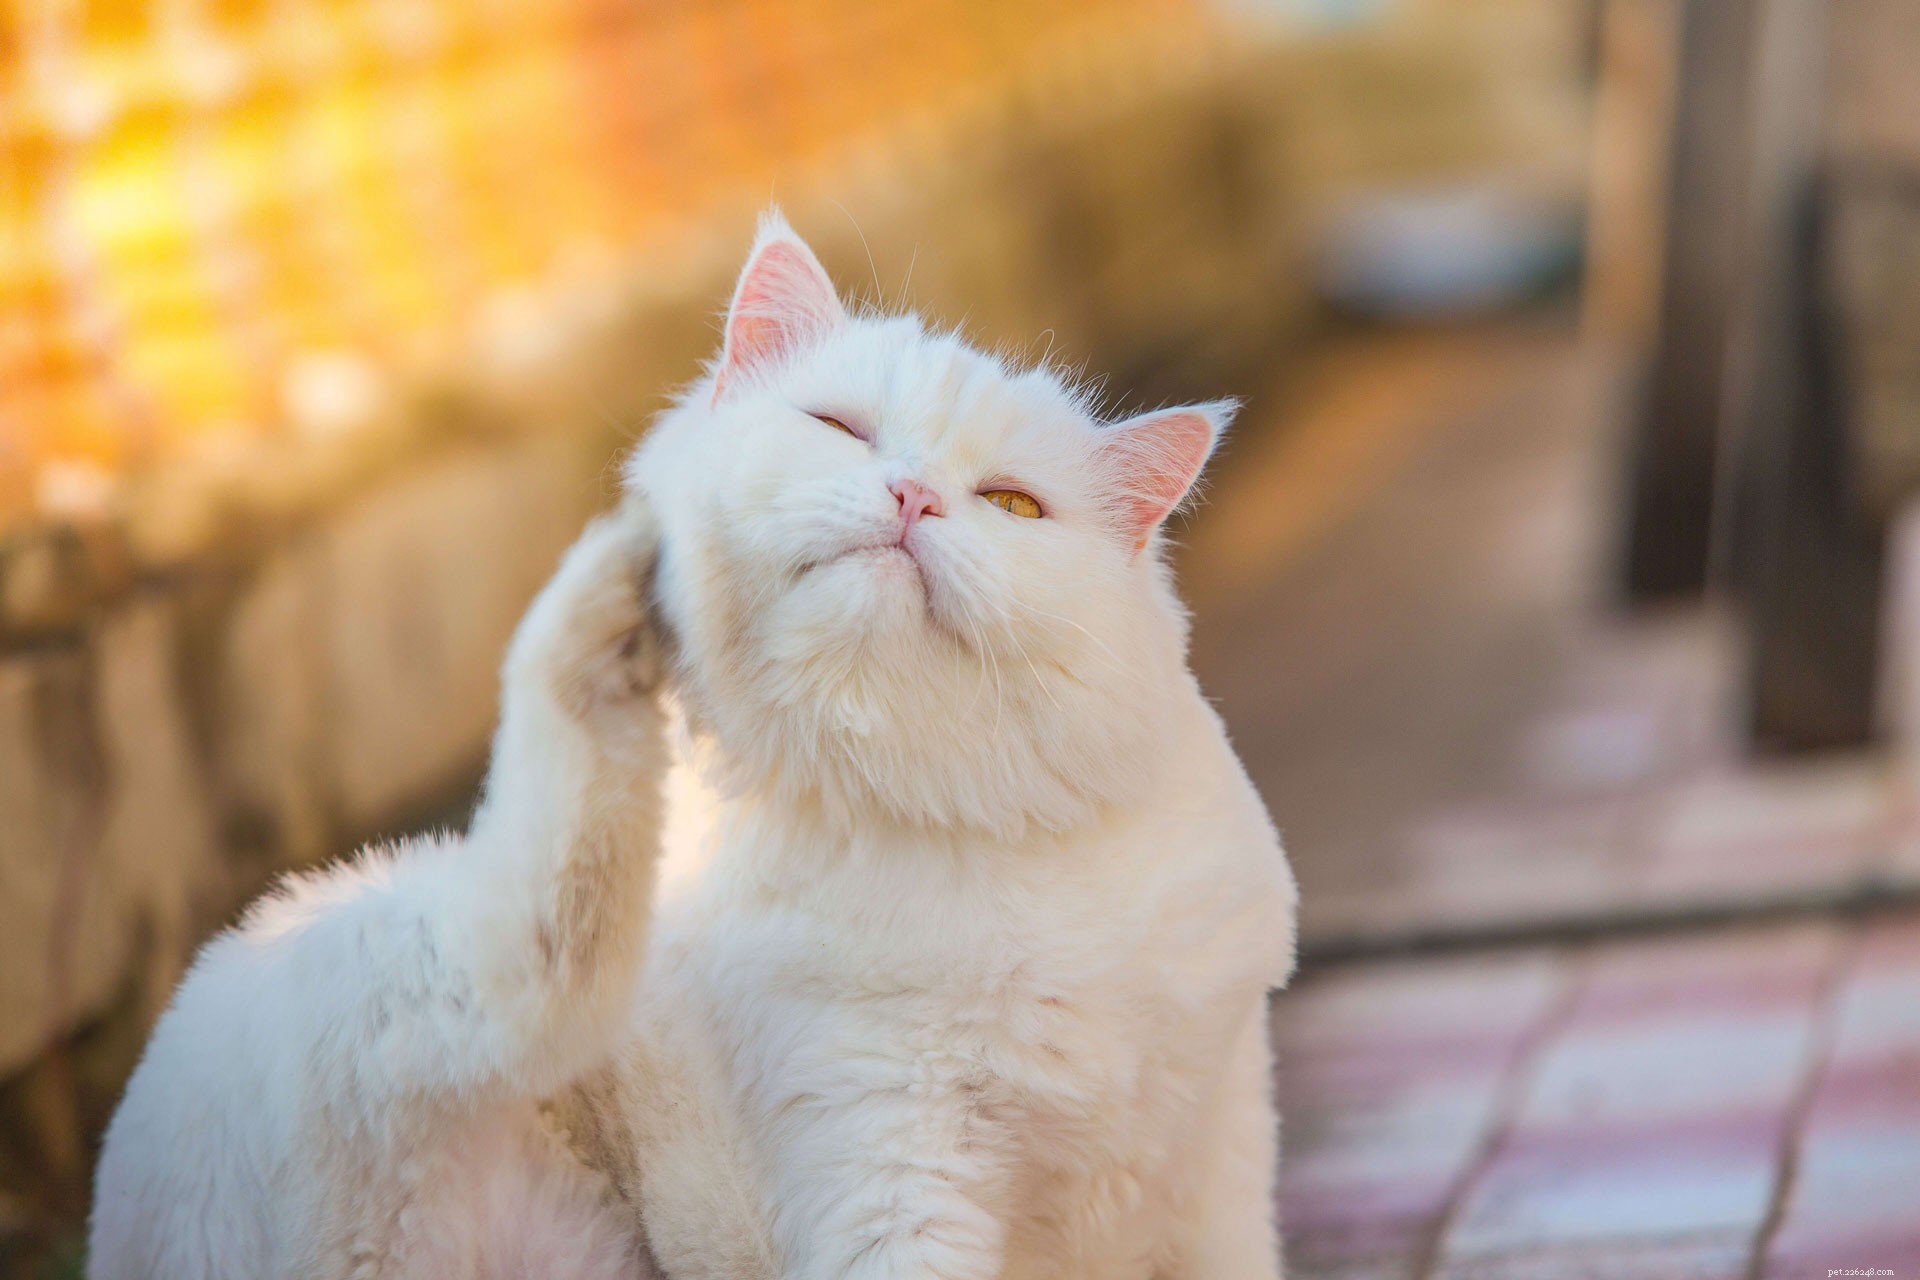 Remédios caseiros fáceis para tratar ácaros da orelha em gatos